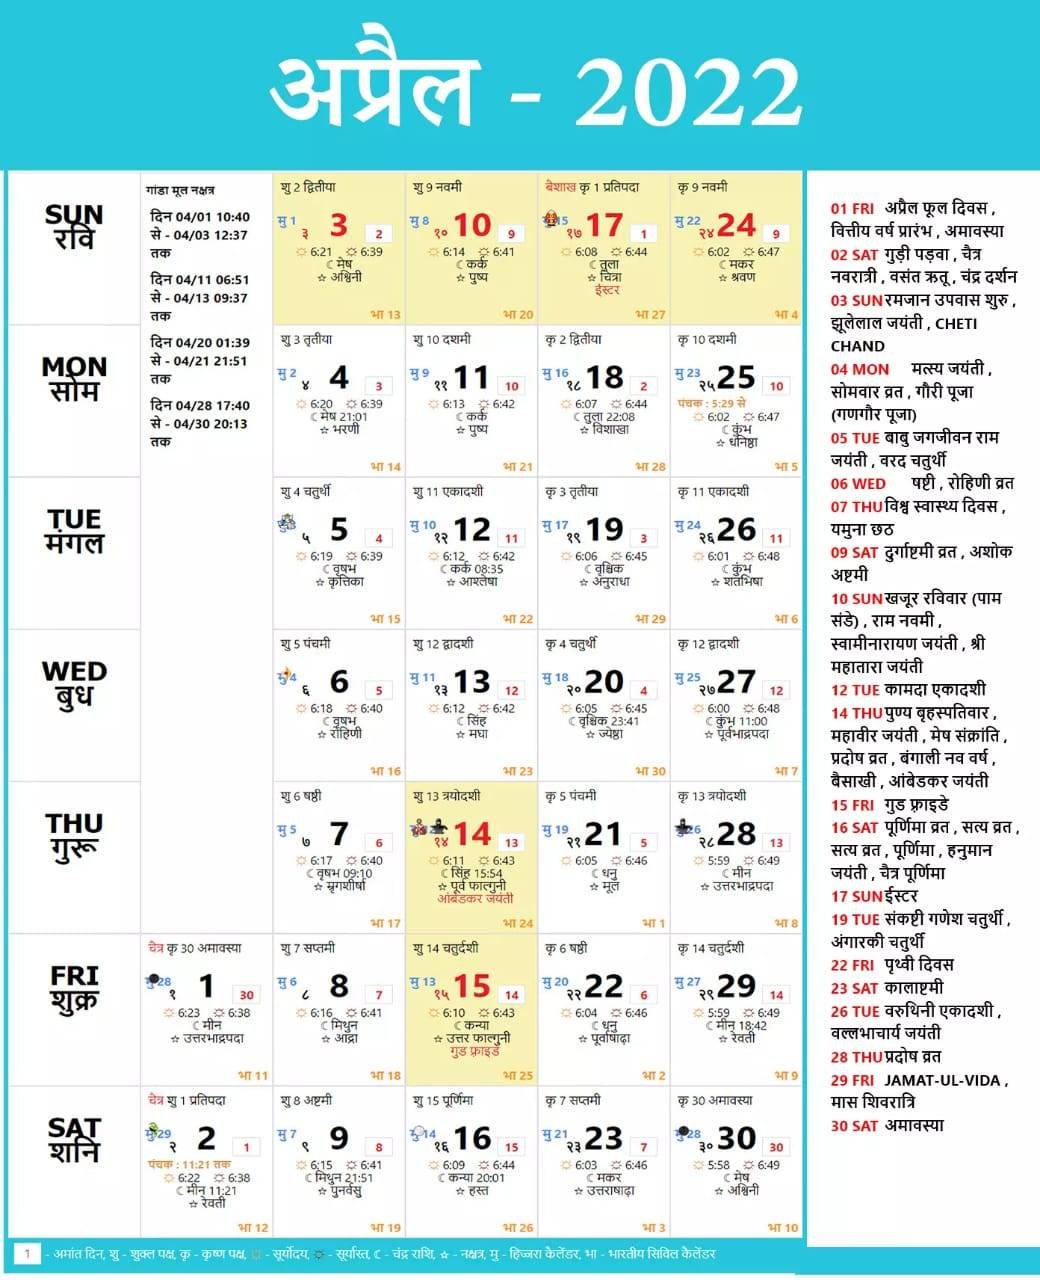 हिन्दू कैलेंडर अप्रैल 2022 के सभी त्यौहार एवं व्रत Hindu Calendar 2022